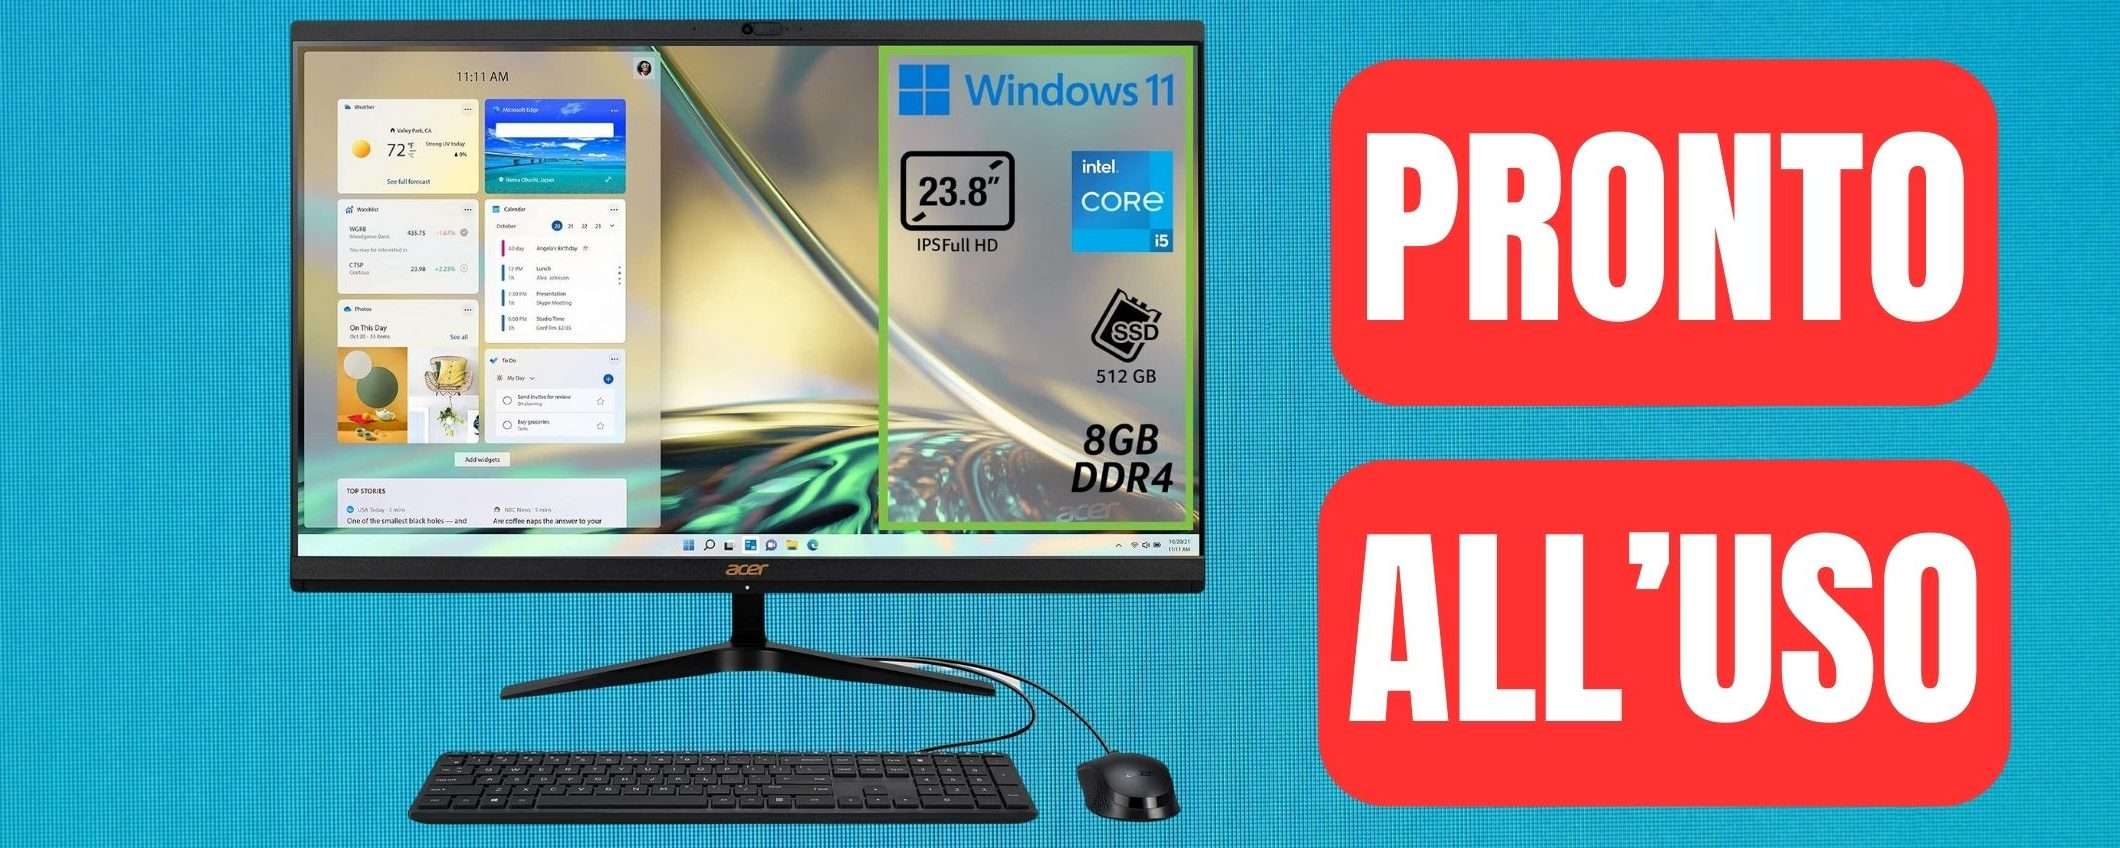 Acer Aspire C24: PC Desktop All-in-One pronto all'uso in OTTIMA OFFERTA